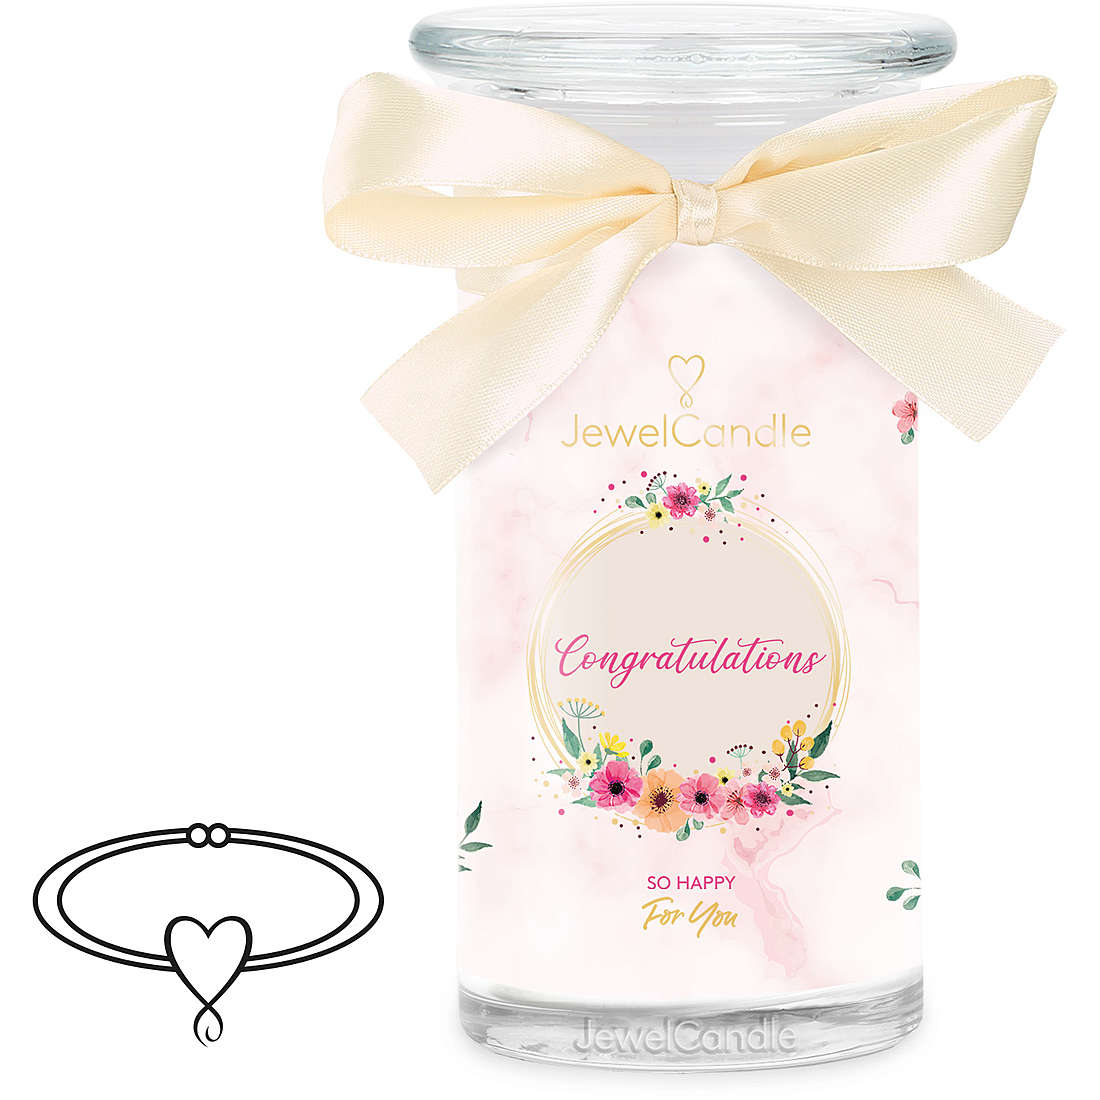 candela JewelCandle Gifting 402516IT